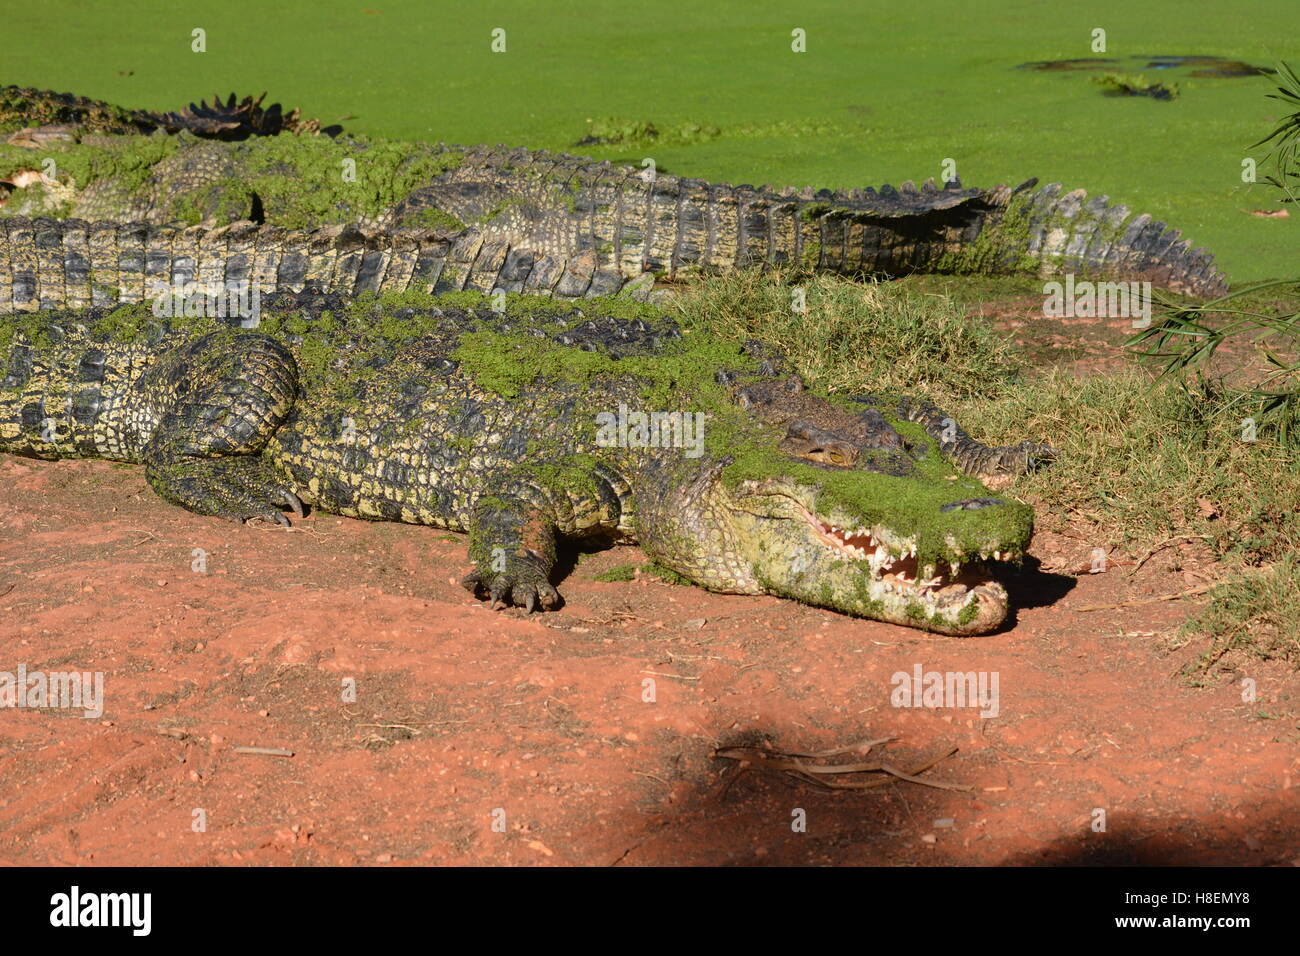 Les crocodiles dans le soleil de l'Australie Banque D'Images